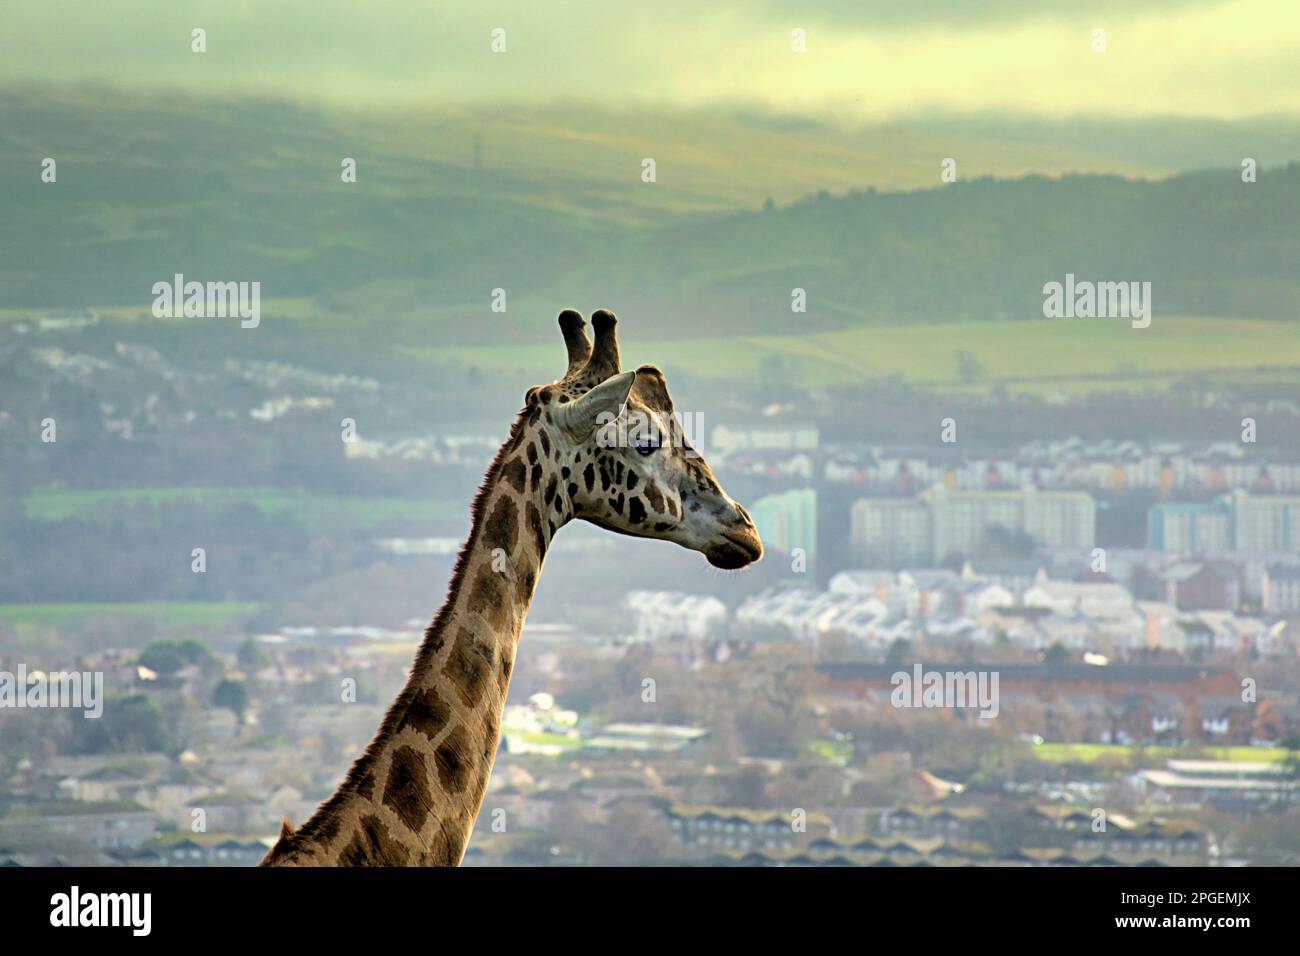 girafe dominant édimbourg en arrière-plan Banque D'Images